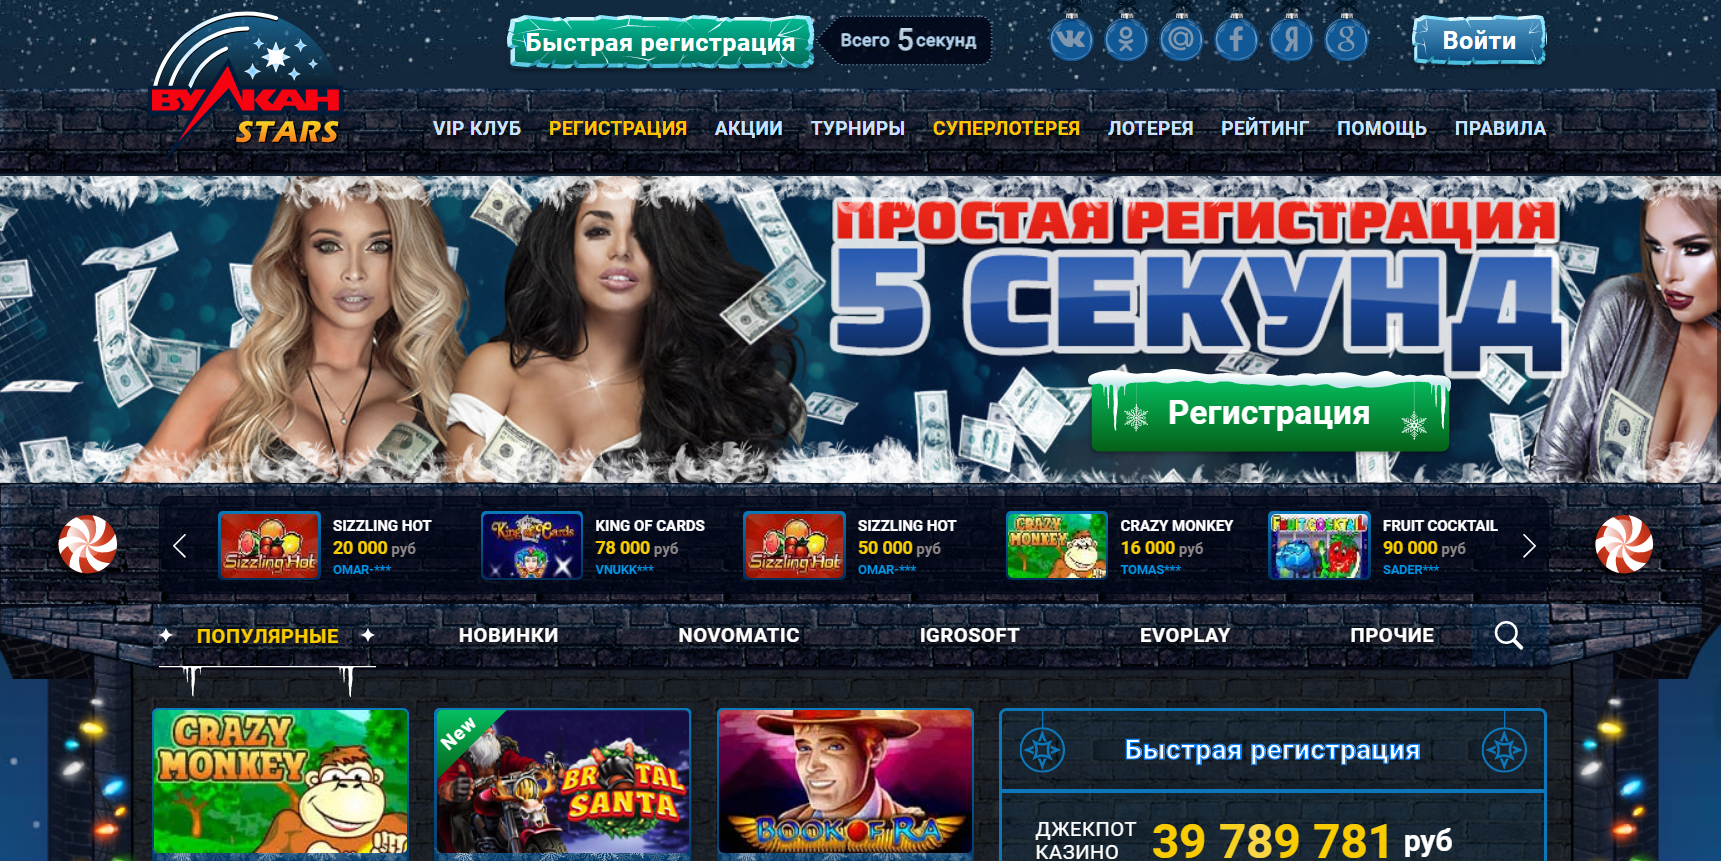 10 казино онлайн россии official casino xyz лотереи в столото